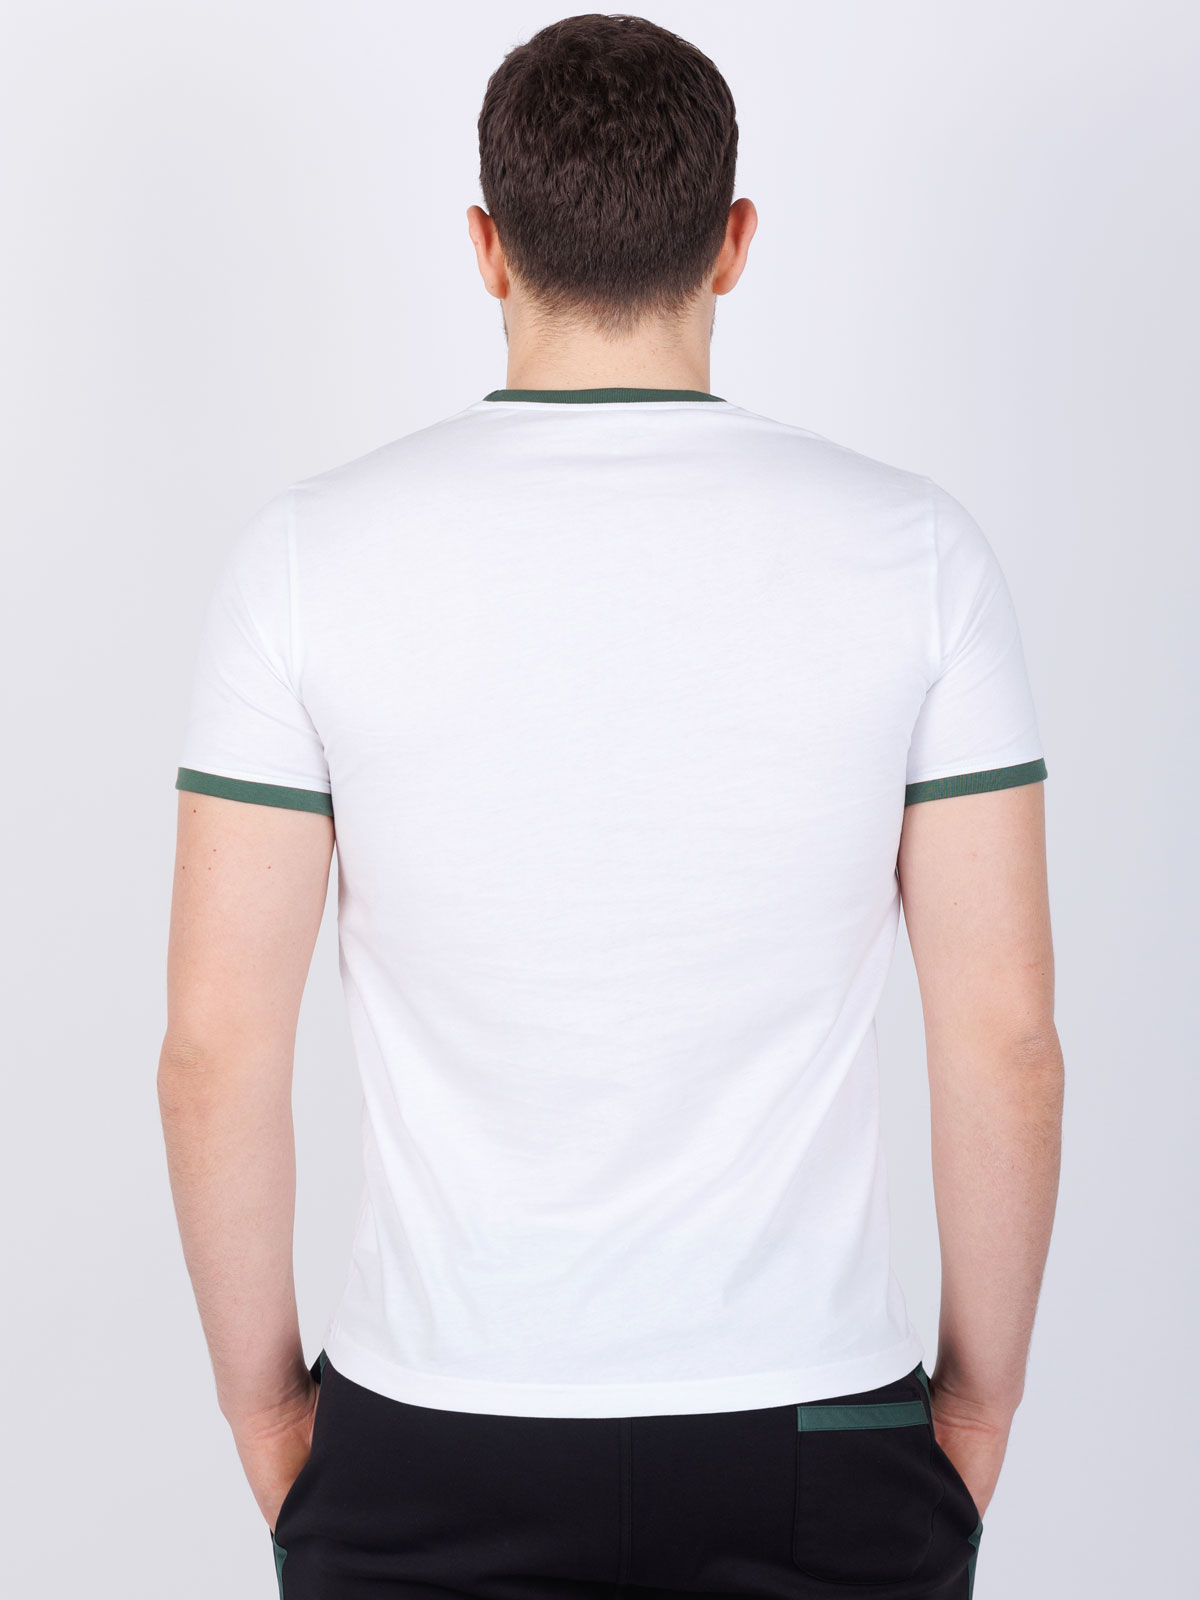 Bluza cu maneca scurta cu imprimeu verde - 96467 € 23.62 img3